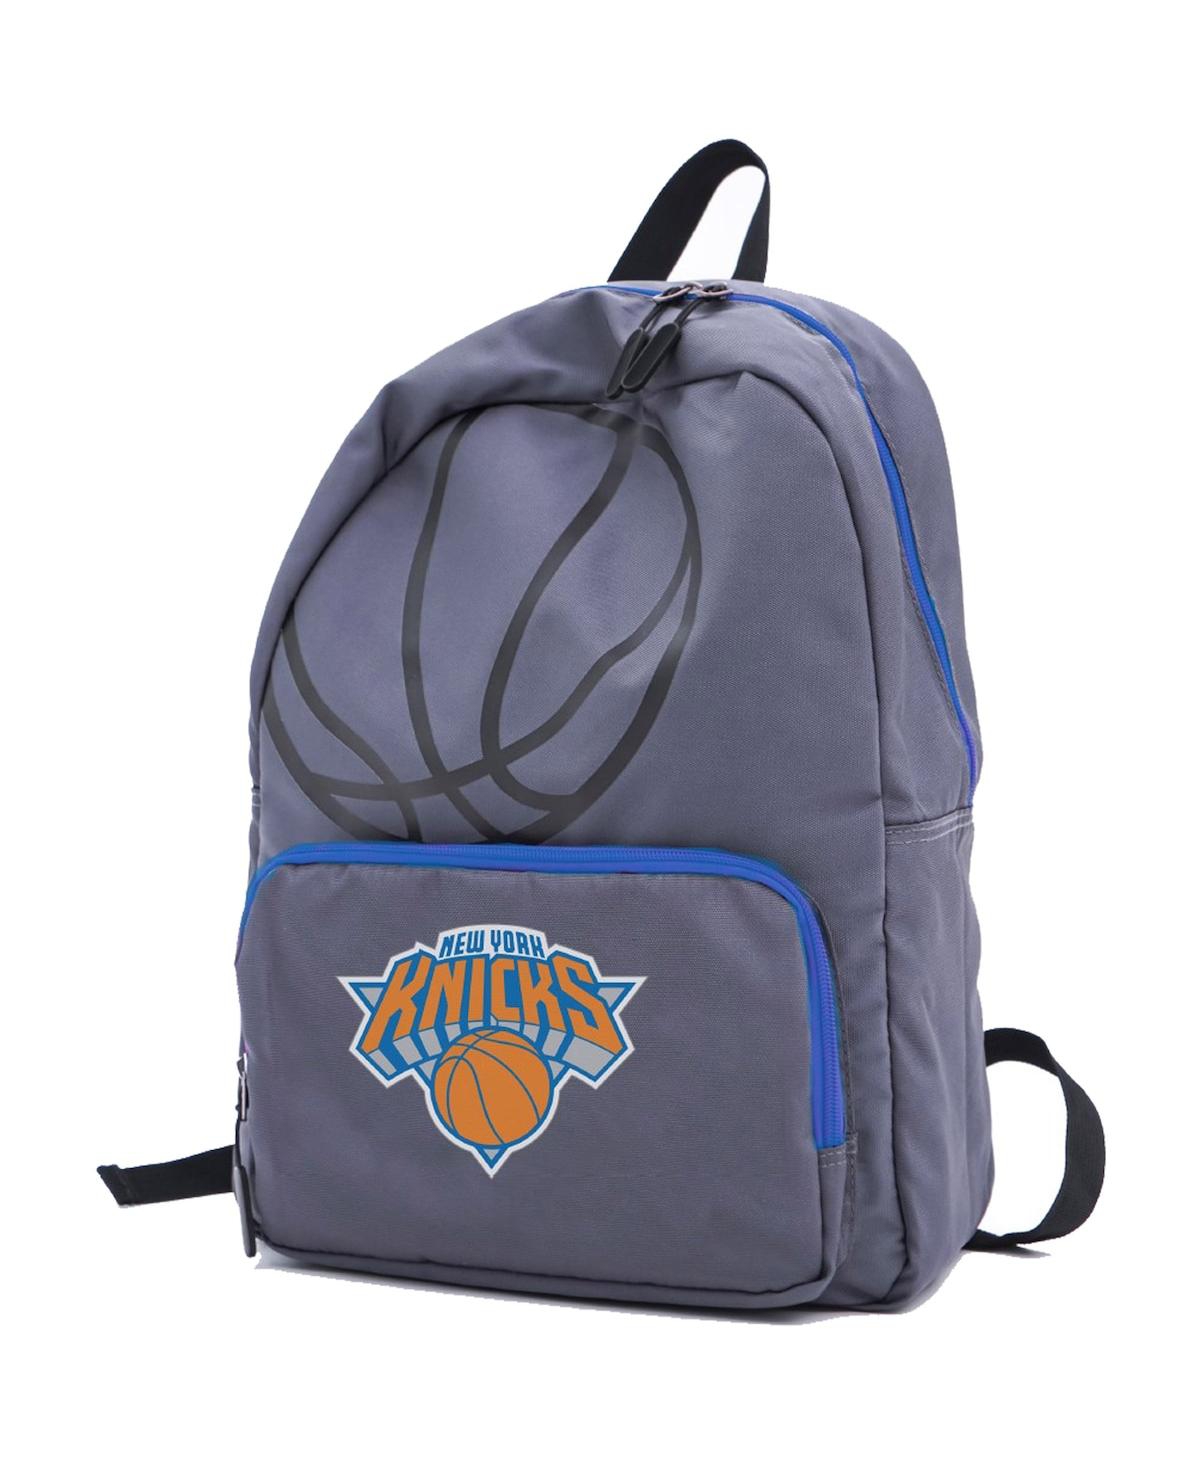 New York Knicks Logo Backpack - Gray